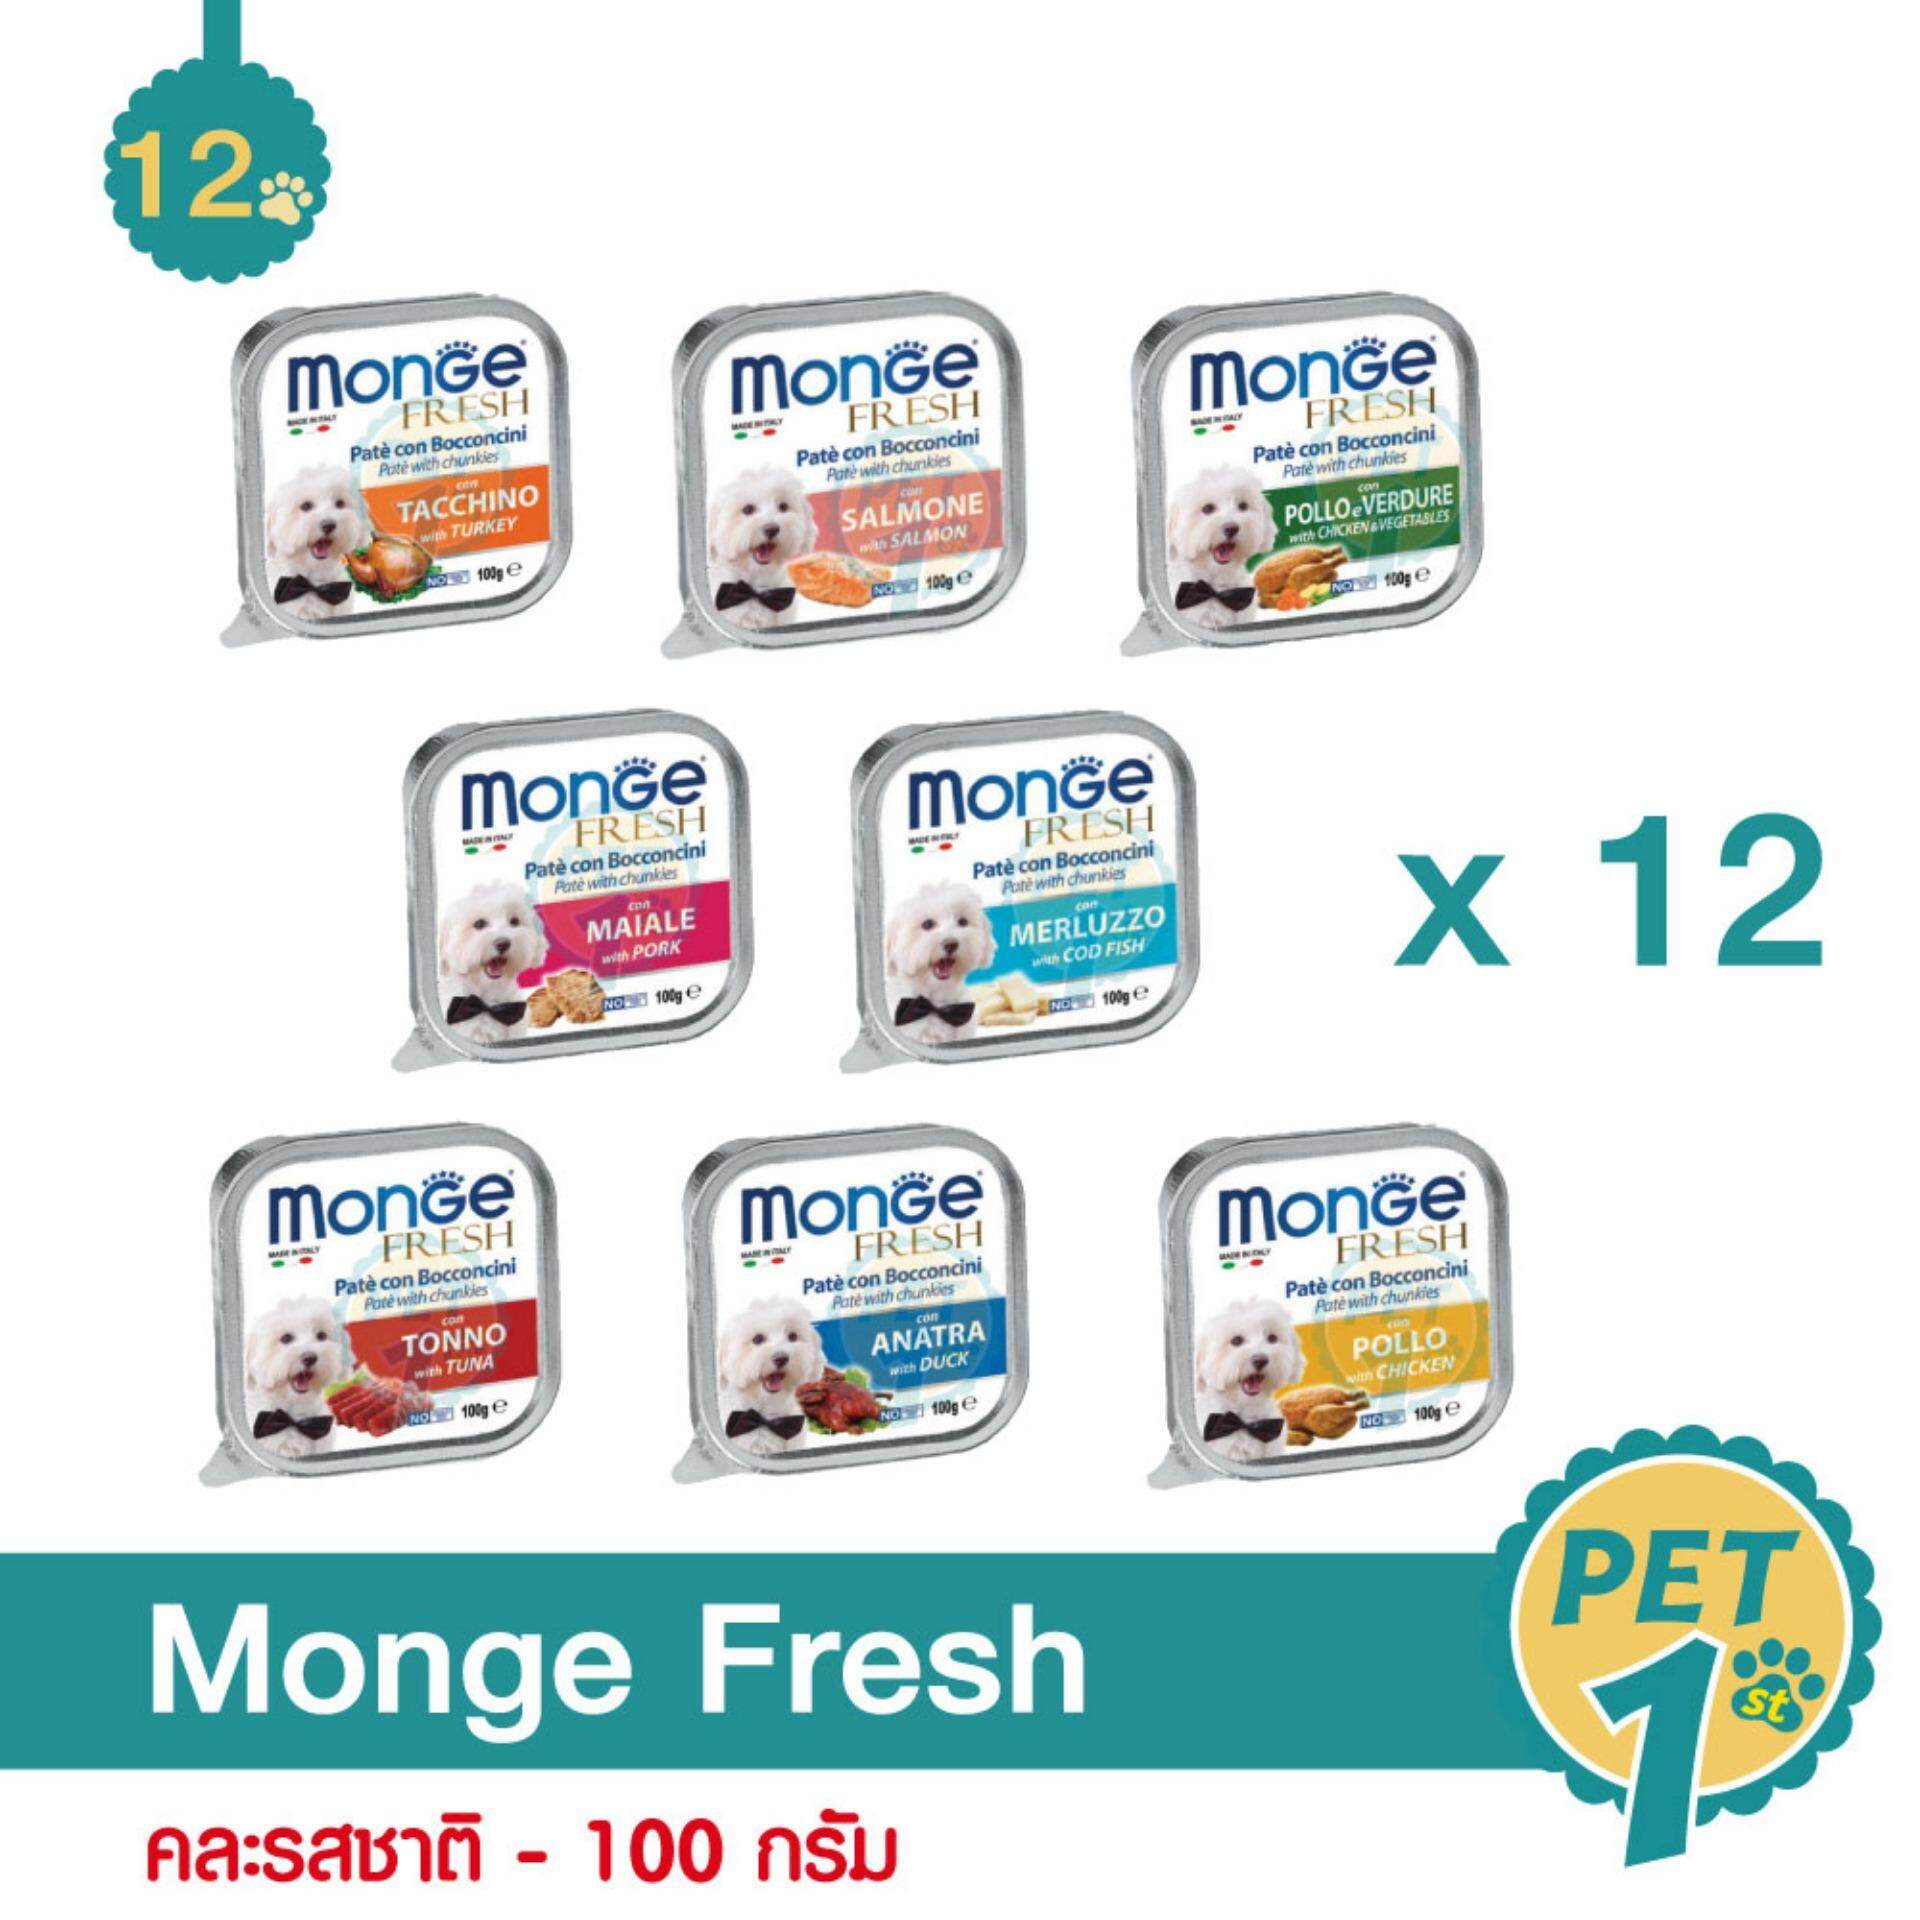 Monge Fresh อาหารเปียกสุนัข คละรสชาติ 100 กรัม/ถาด - 12 ถาด